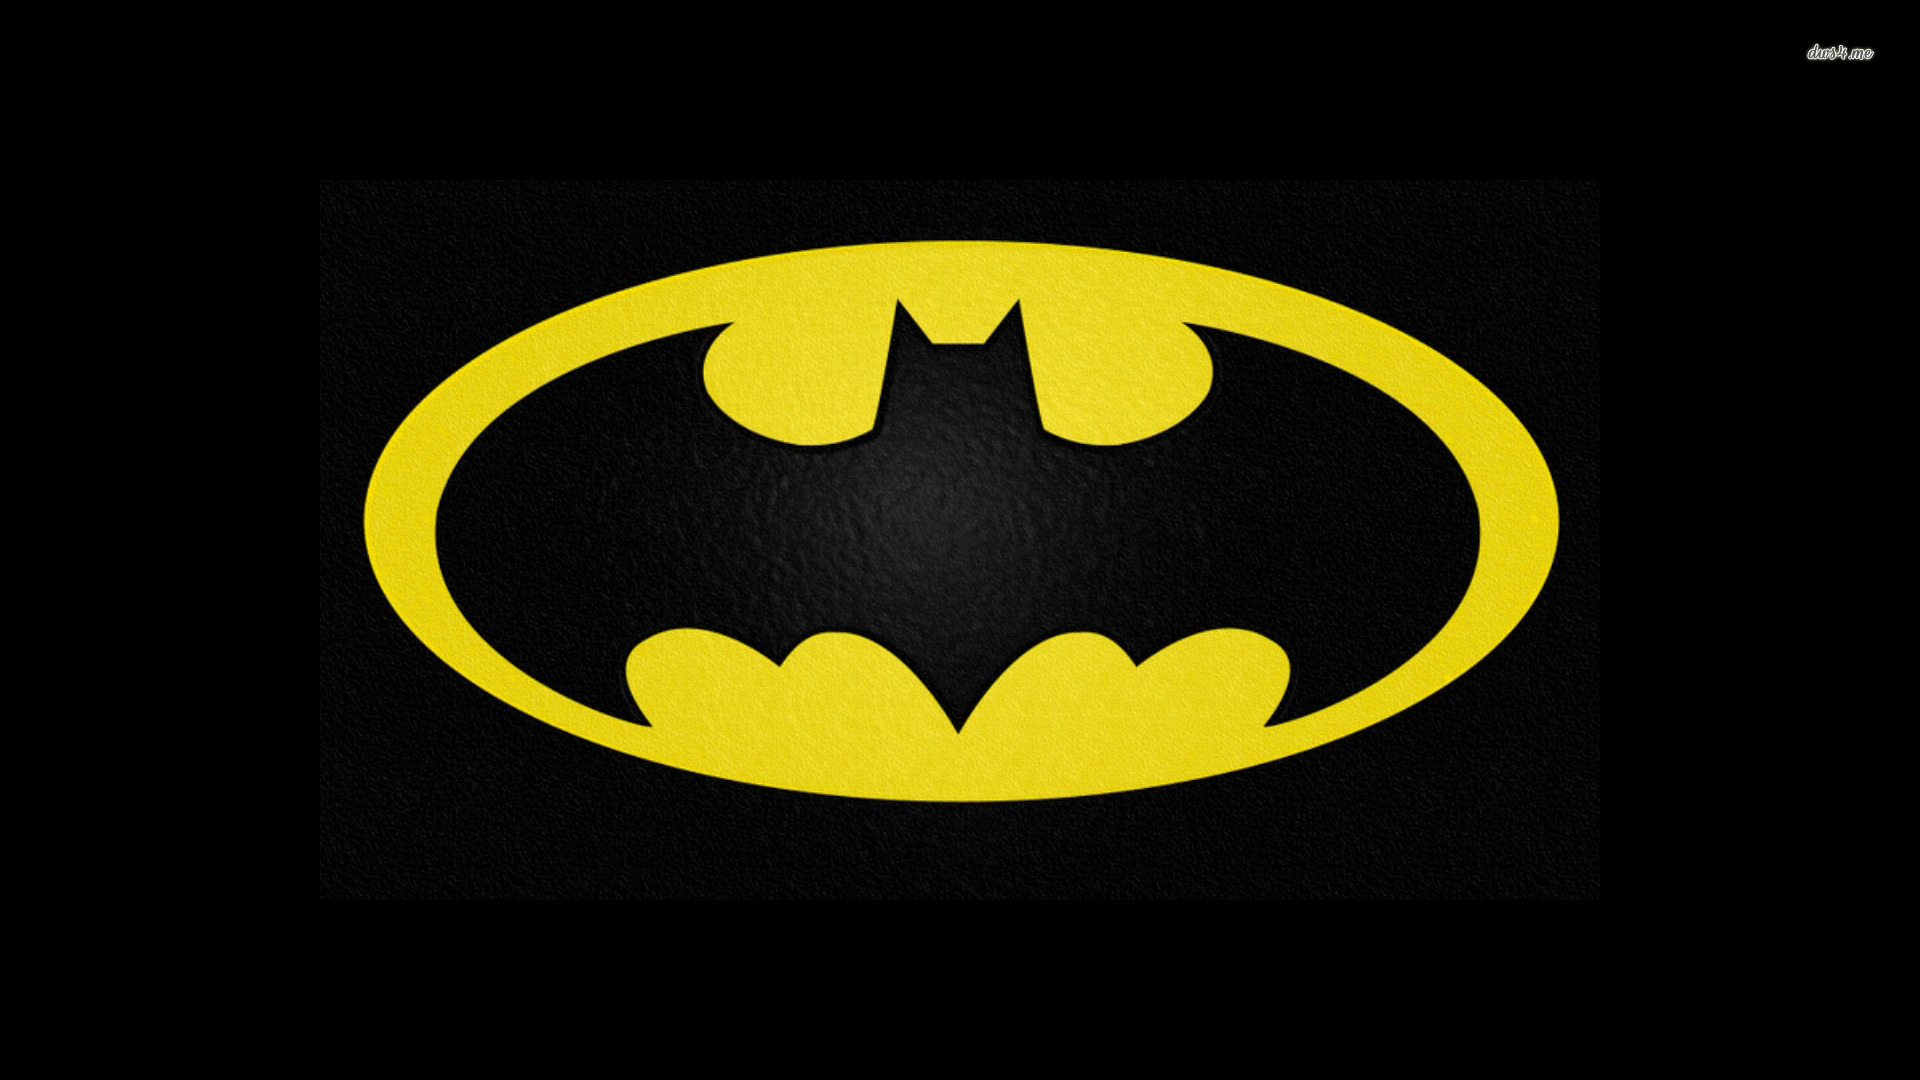 Batman Symbol Wallpaper On